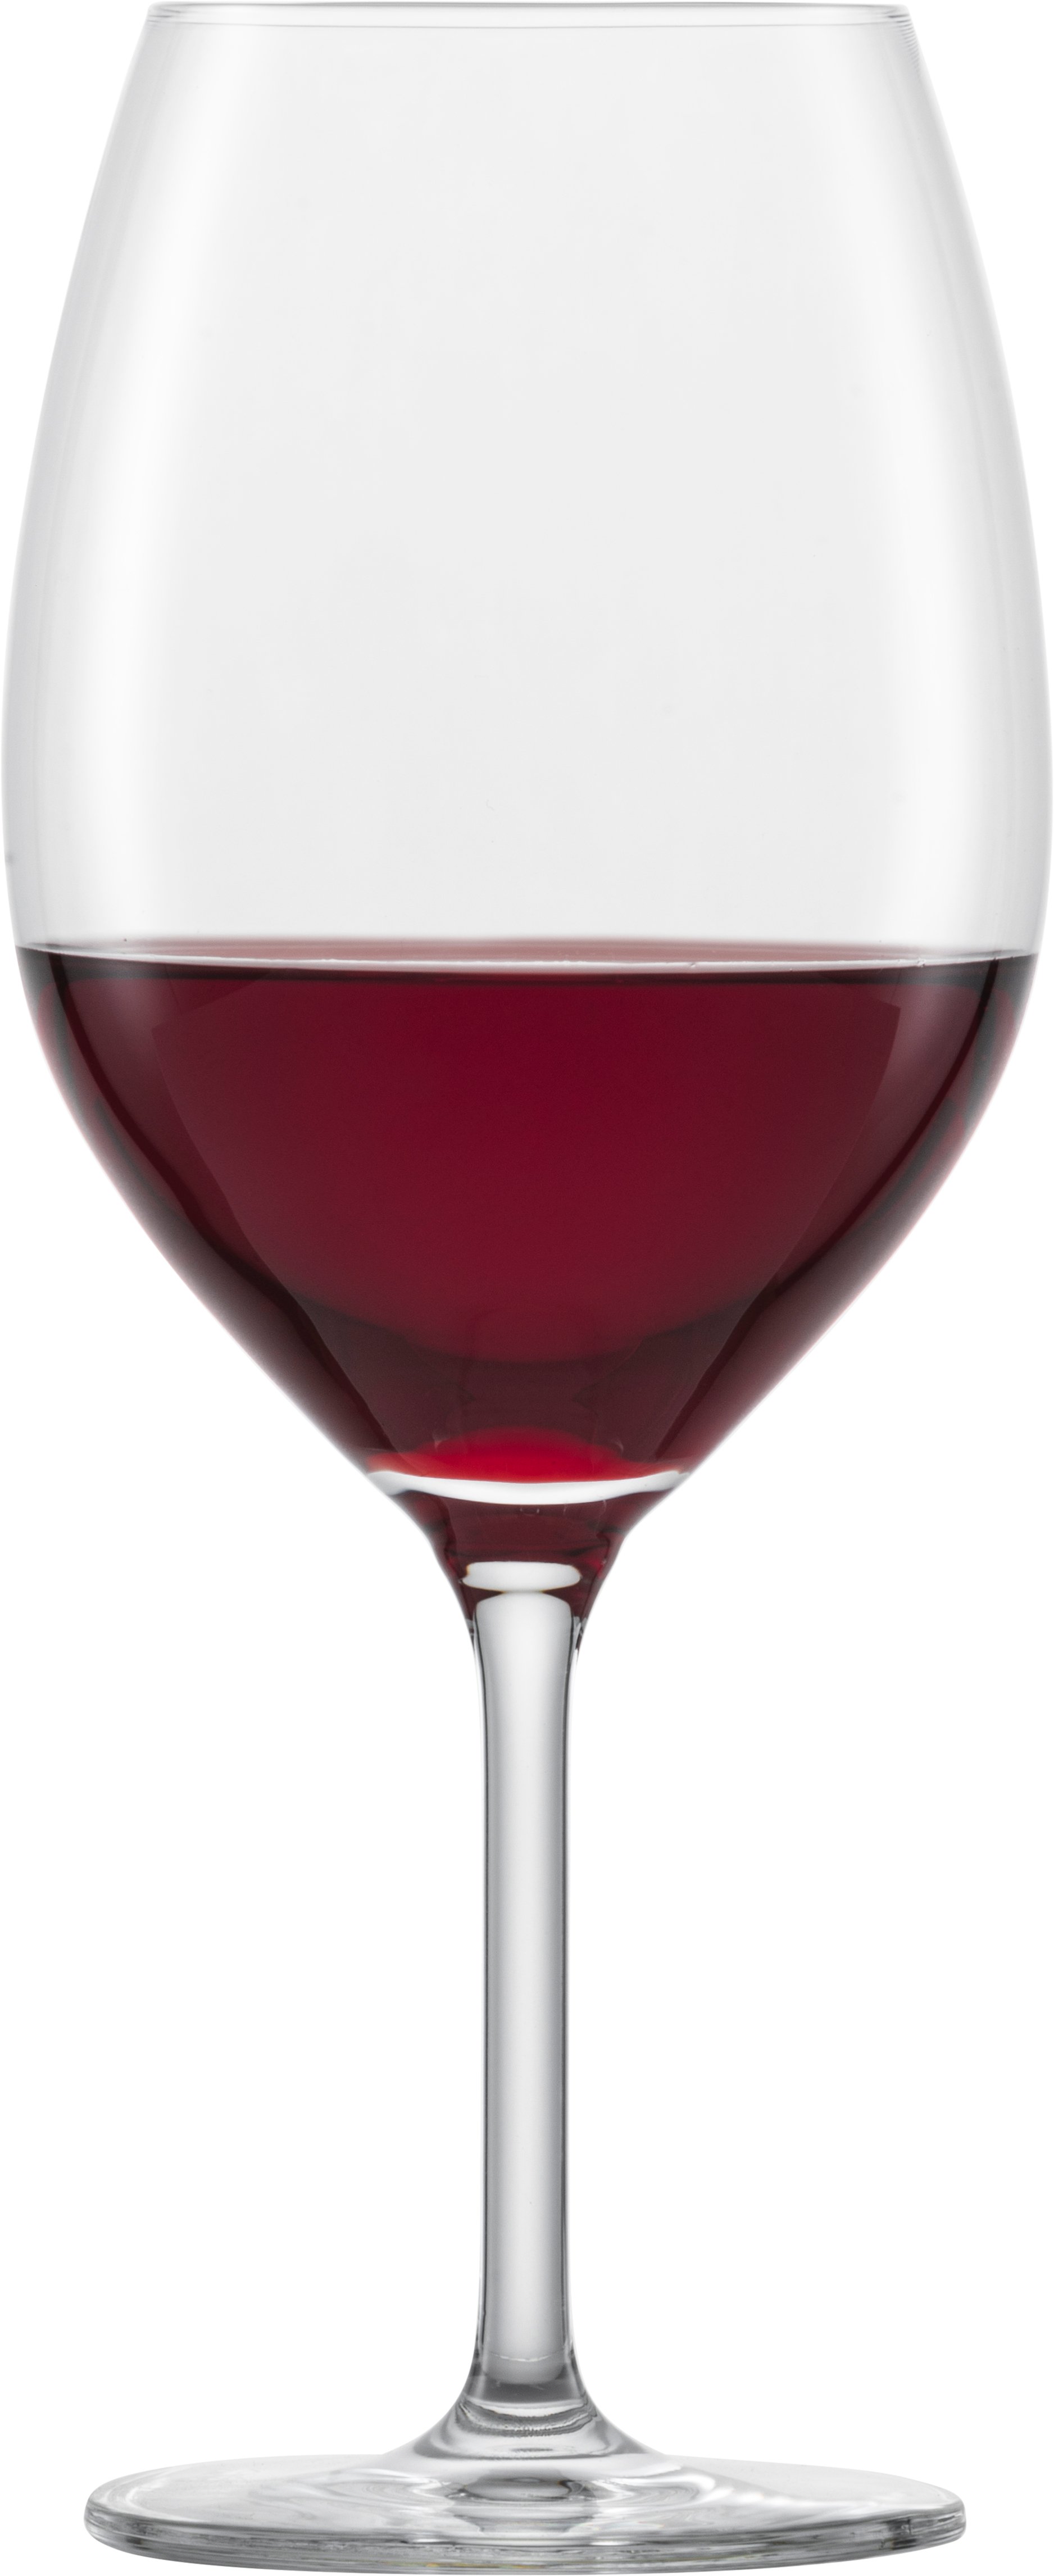 SCHOTT ZWIESEL Serie TASTE Bordeauxglas 6 Stück Inhalt 656 ml Bordeaux